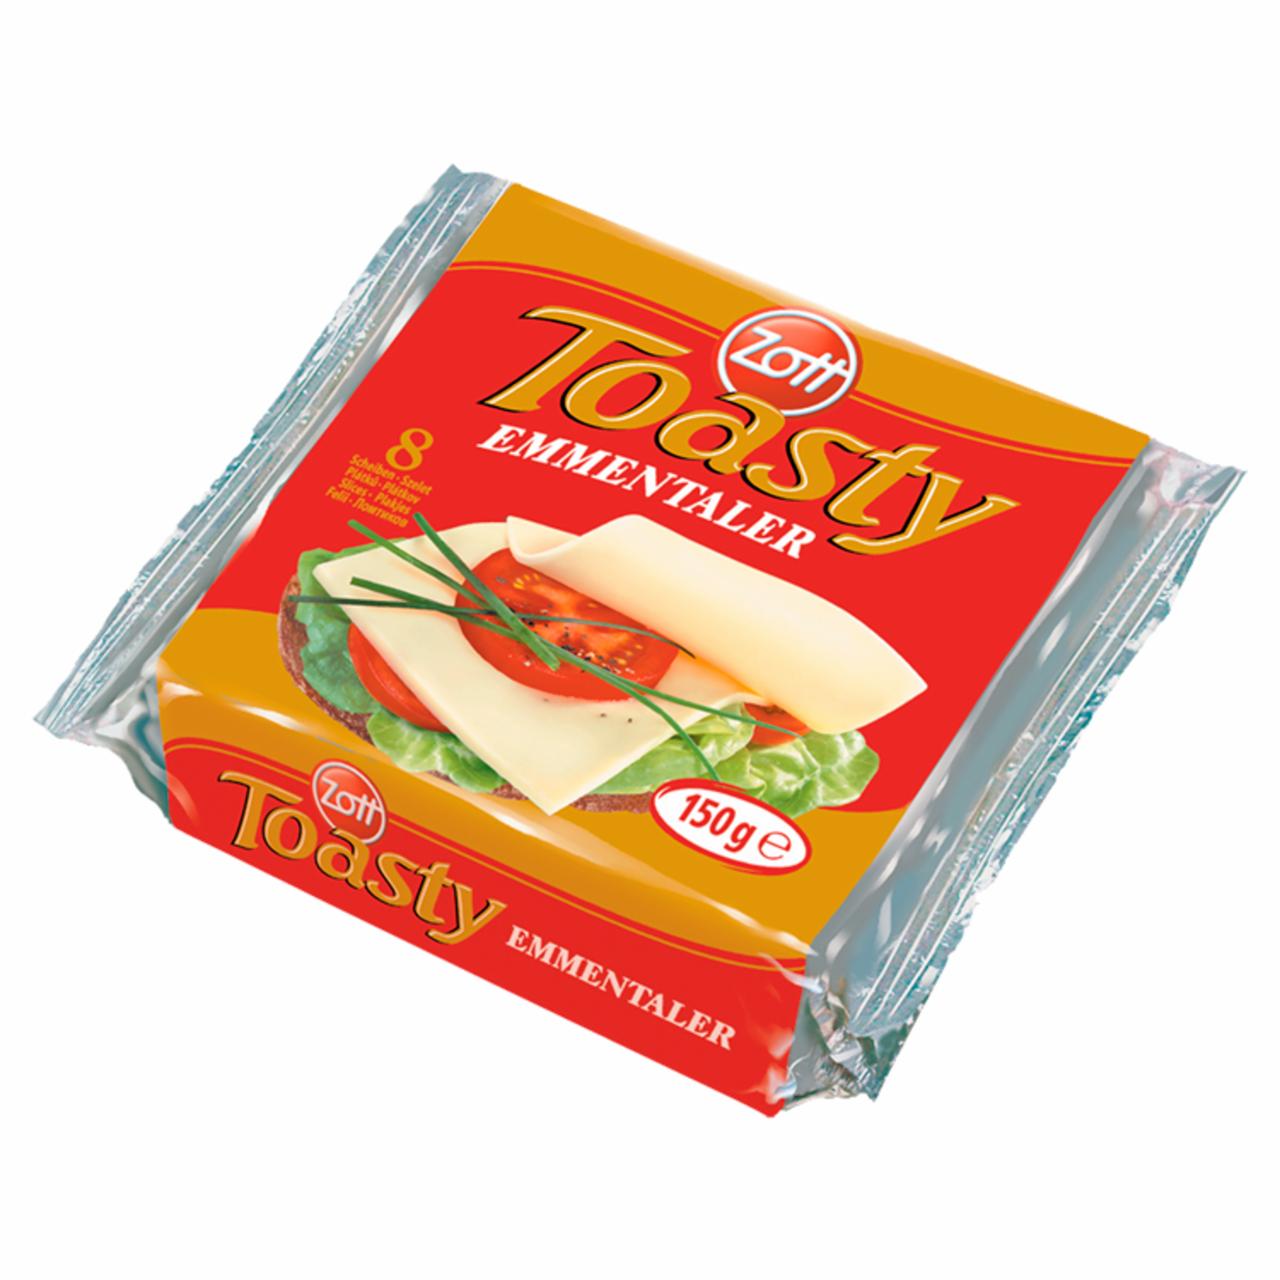 Képek - Zott Toasty Emmentaler szeletelt, ementáli ízű, zsíros ömlesztett sajt 8 x 18,75 g (150 g)